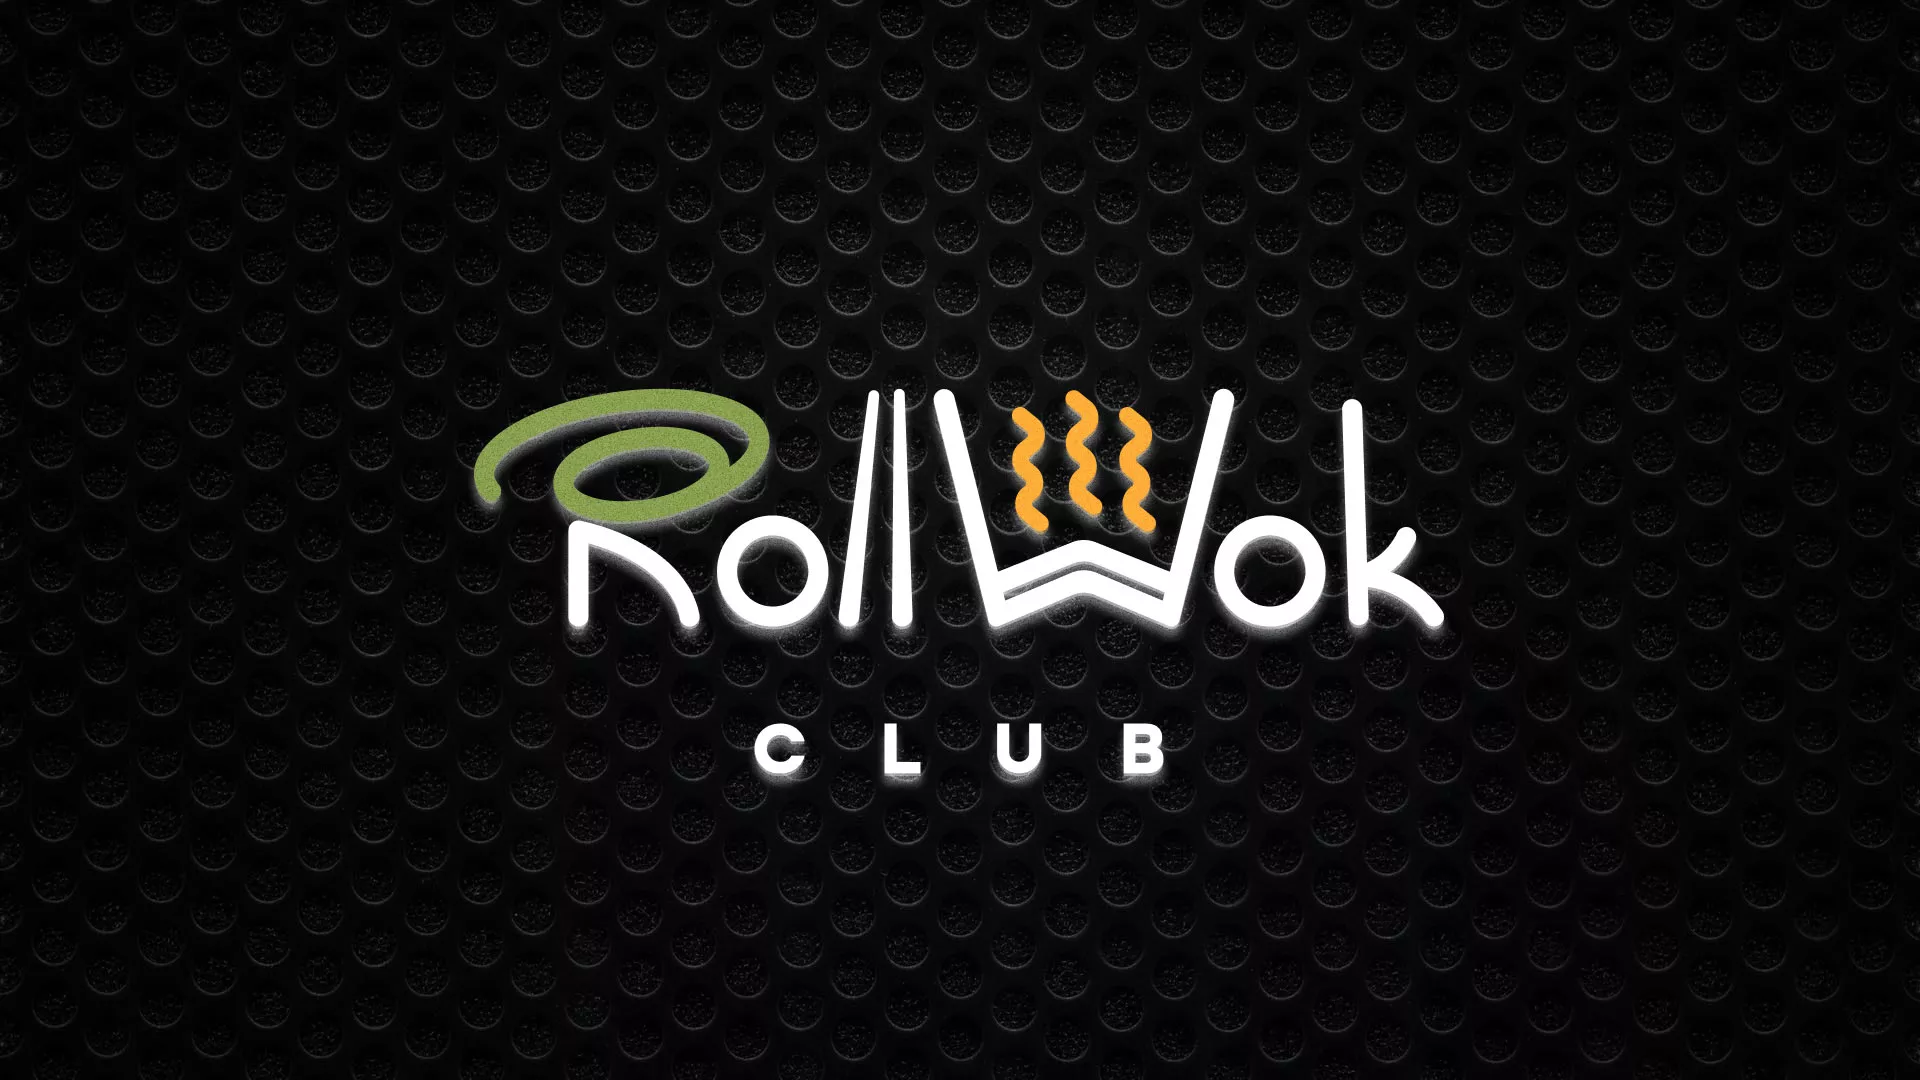 Брендирование торговых точек суши-бара «Roll Wok Club» в Переславле-Залесском